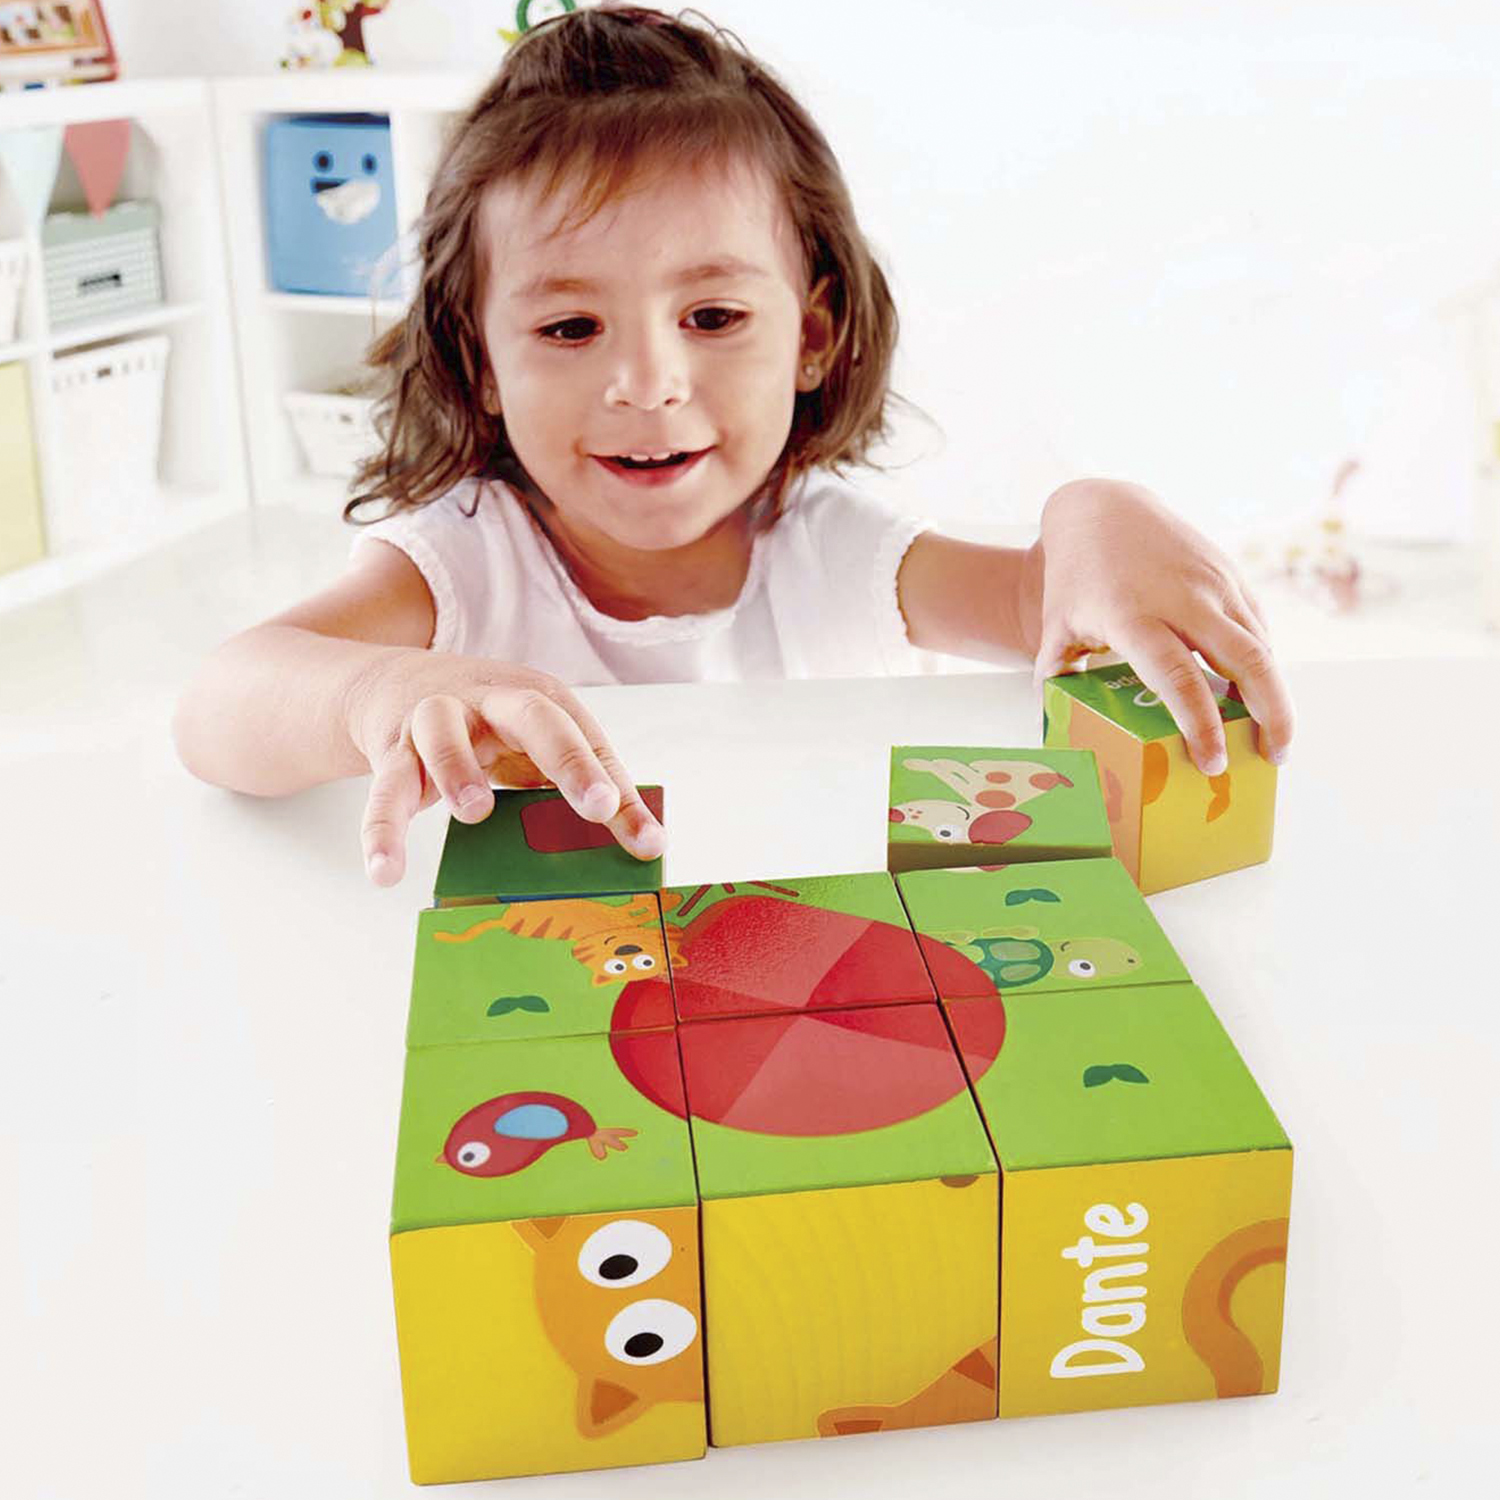 Развивающая игрушка Hape Кубики-пазлы Лили 9 элементов, 6 вариантов картинок, деревянные бусины деревянные кубики 10х10 мм набор 40 шт без покрытия